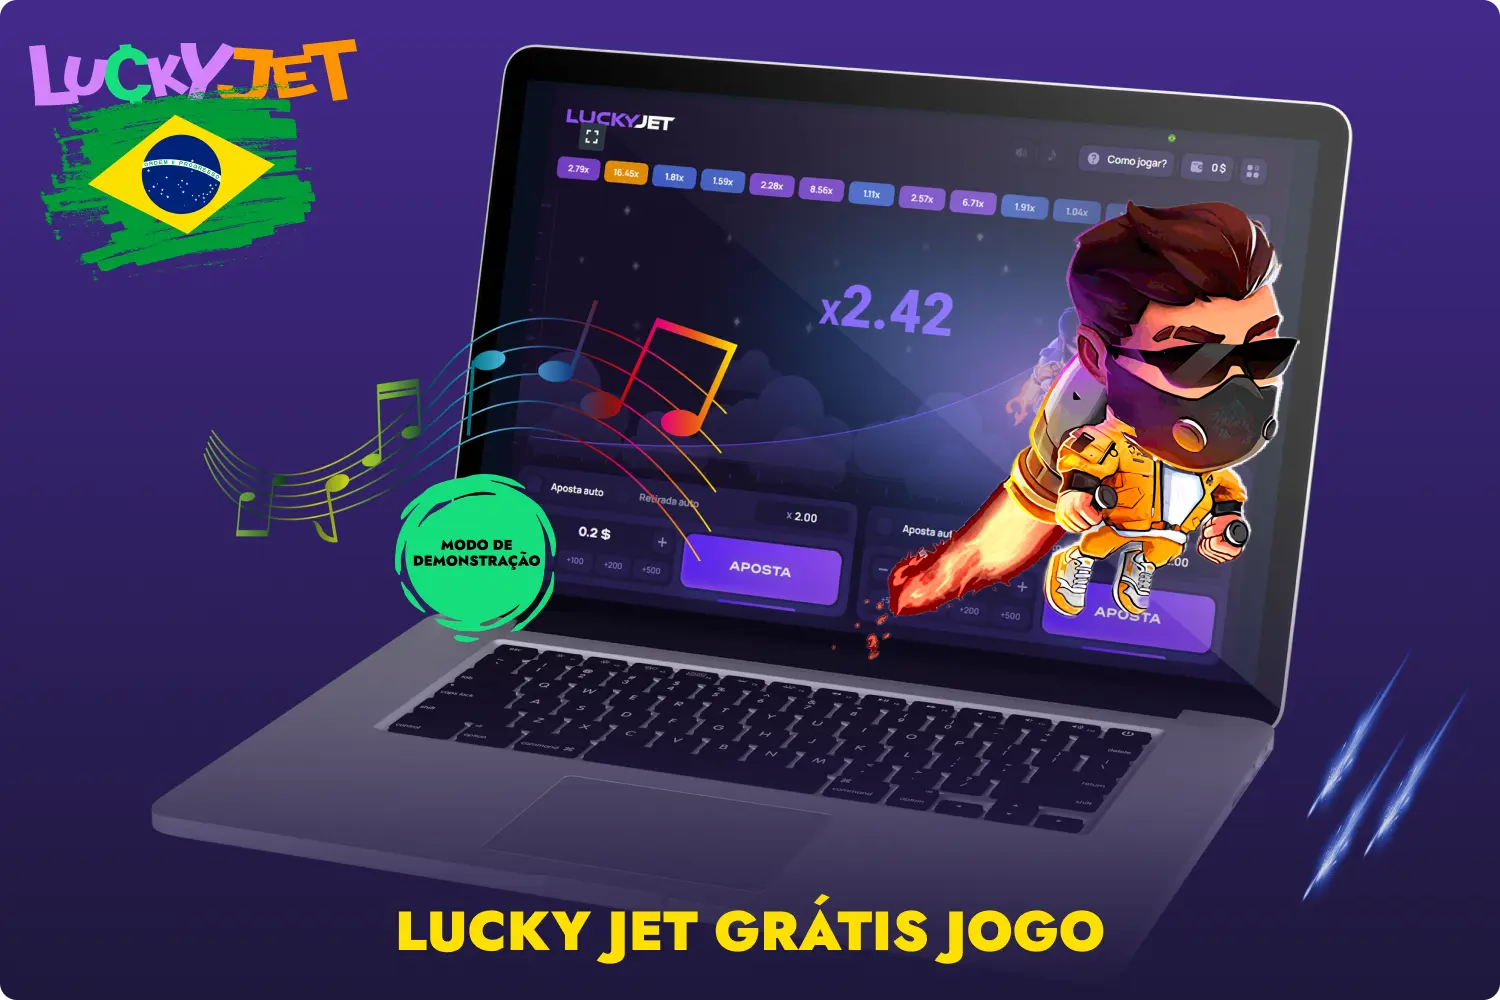 Os jogadores do Brasil vão adorar os gráficos e os efeitos sonoros do jogo de demonstração Lucky Jet